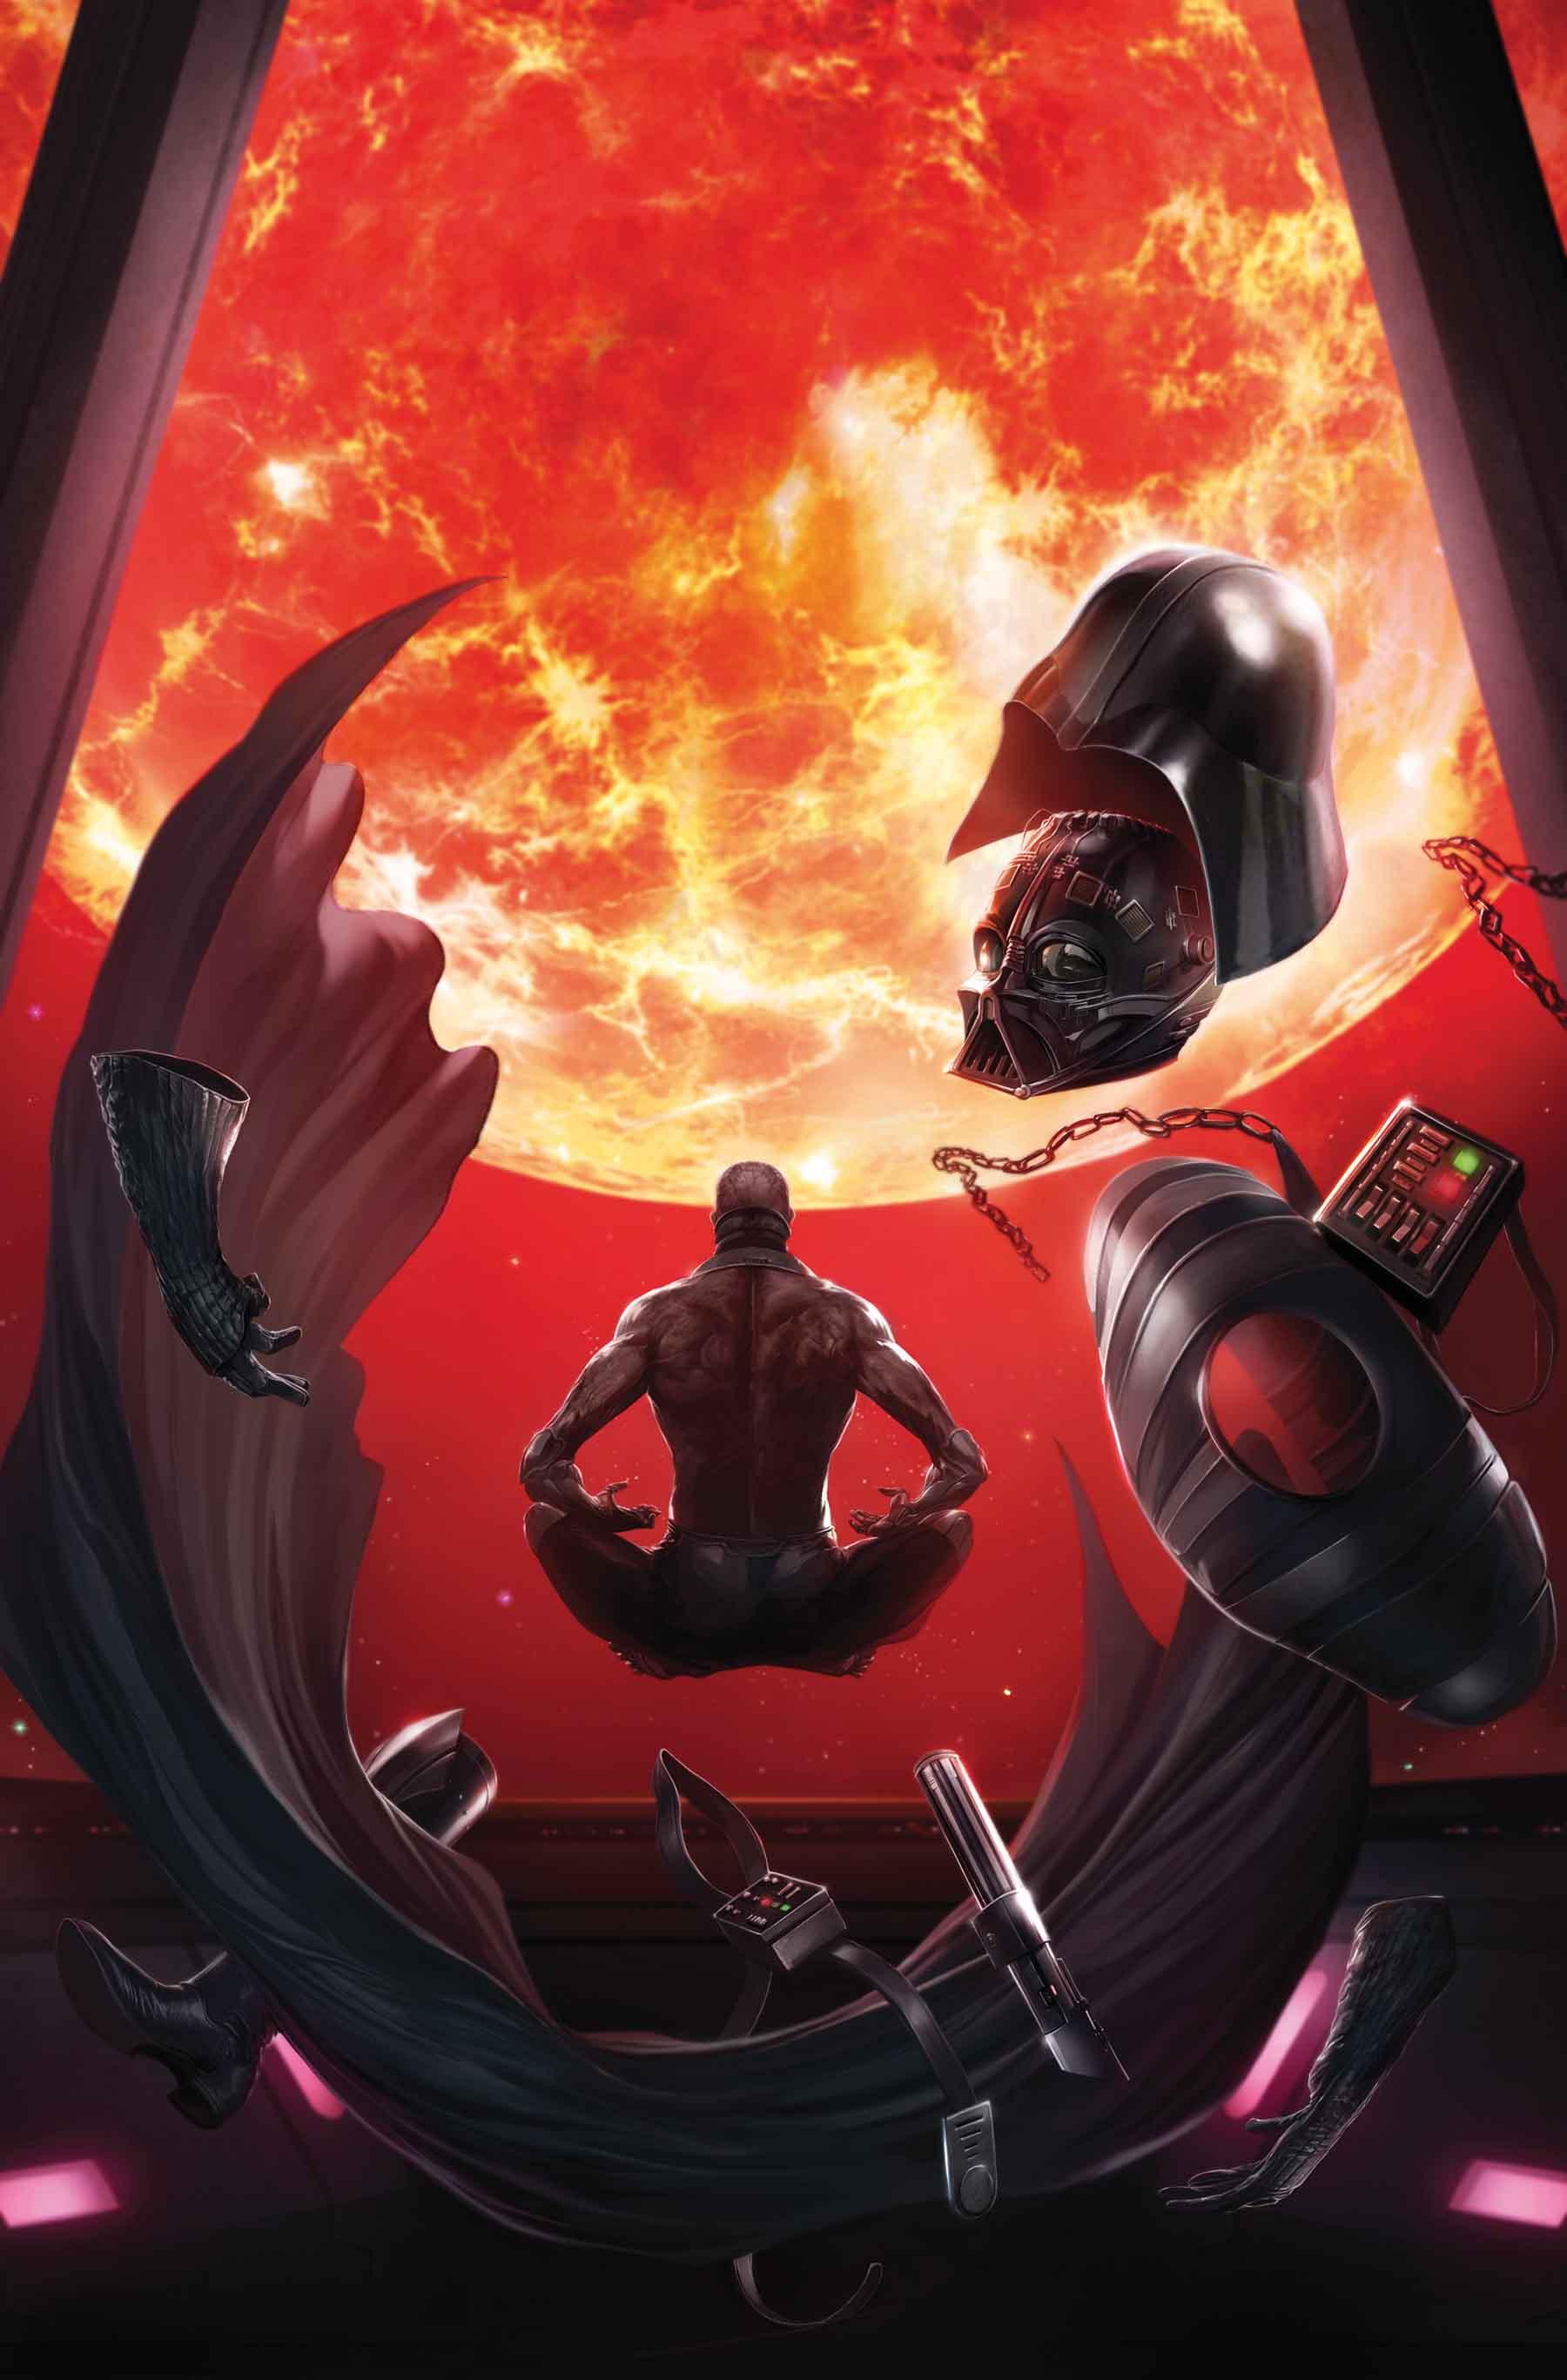 Darth Vader Vol. 2 #8